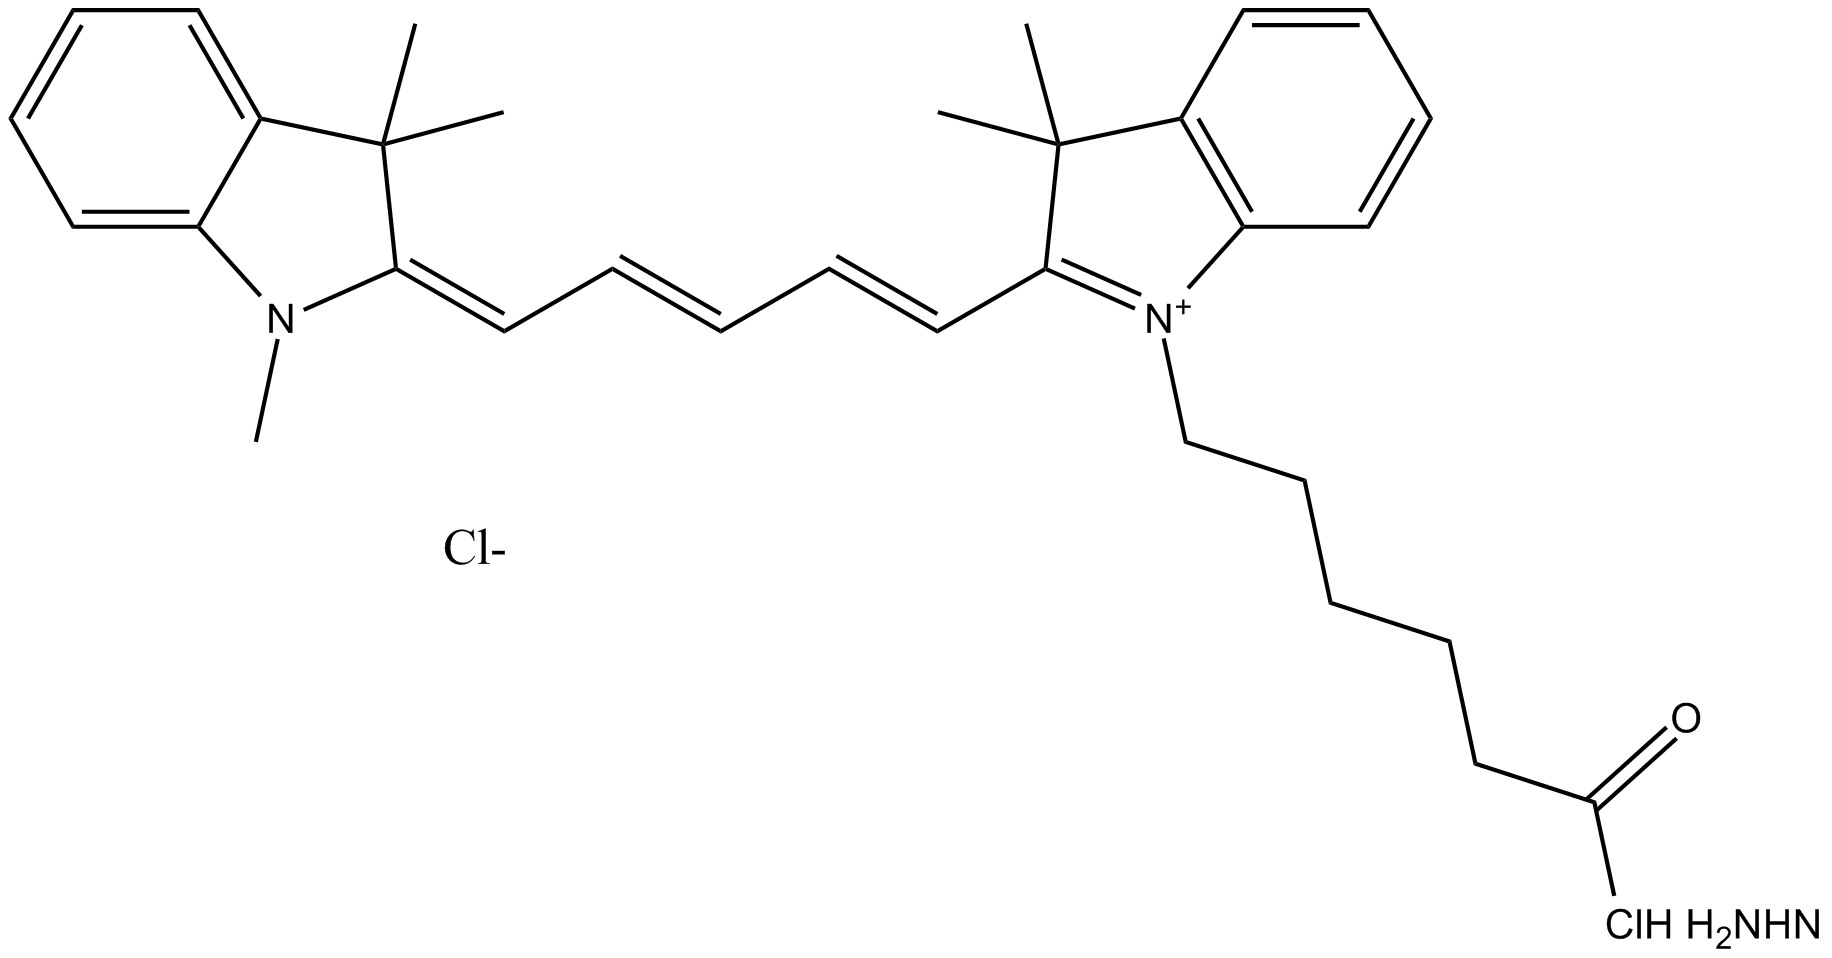 Cy5 hydrazide (non-sulfonated)